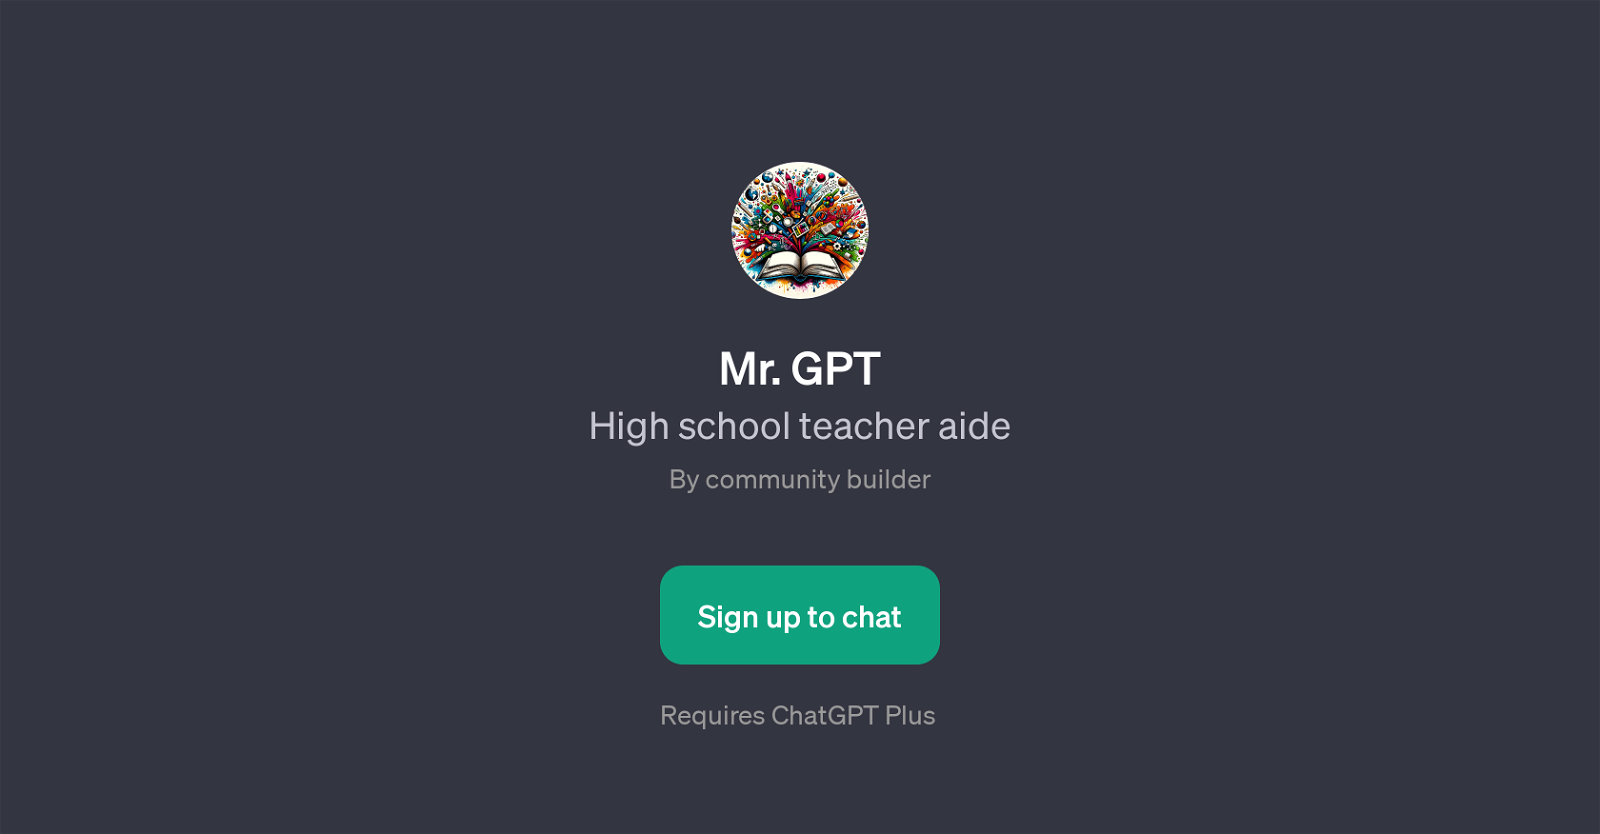 Mr. GPT website